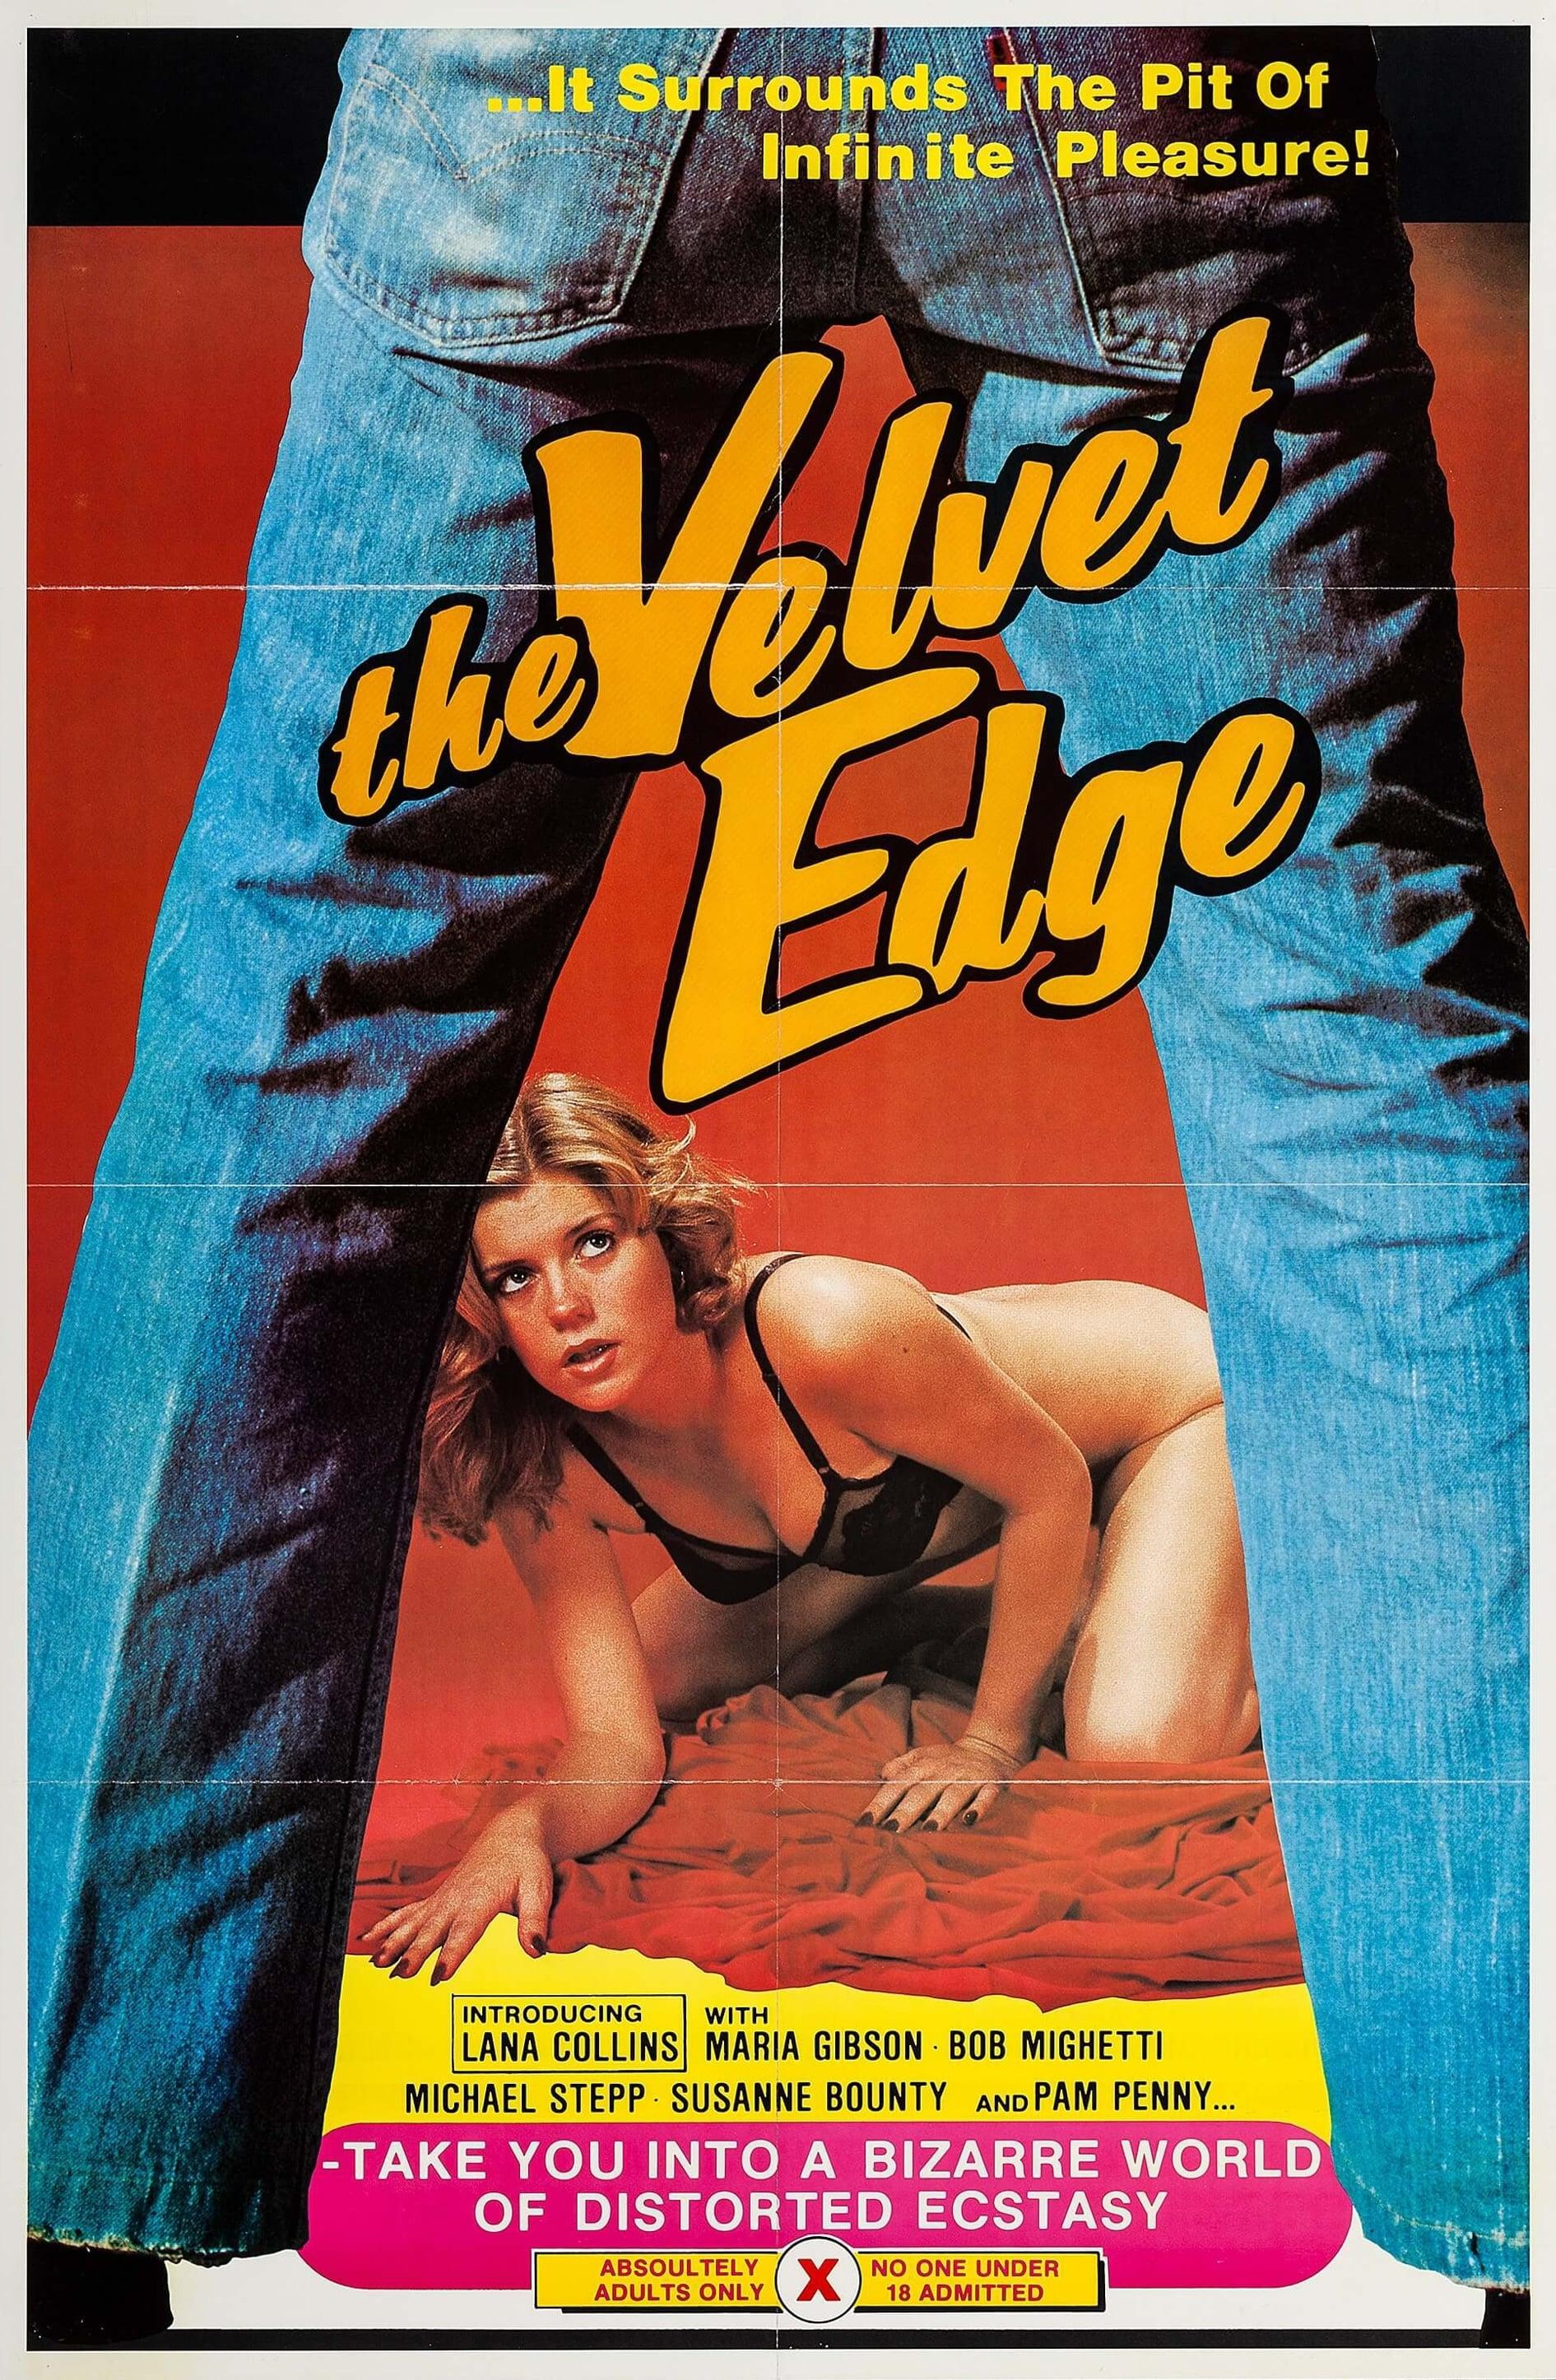 The Velvet Edge poster